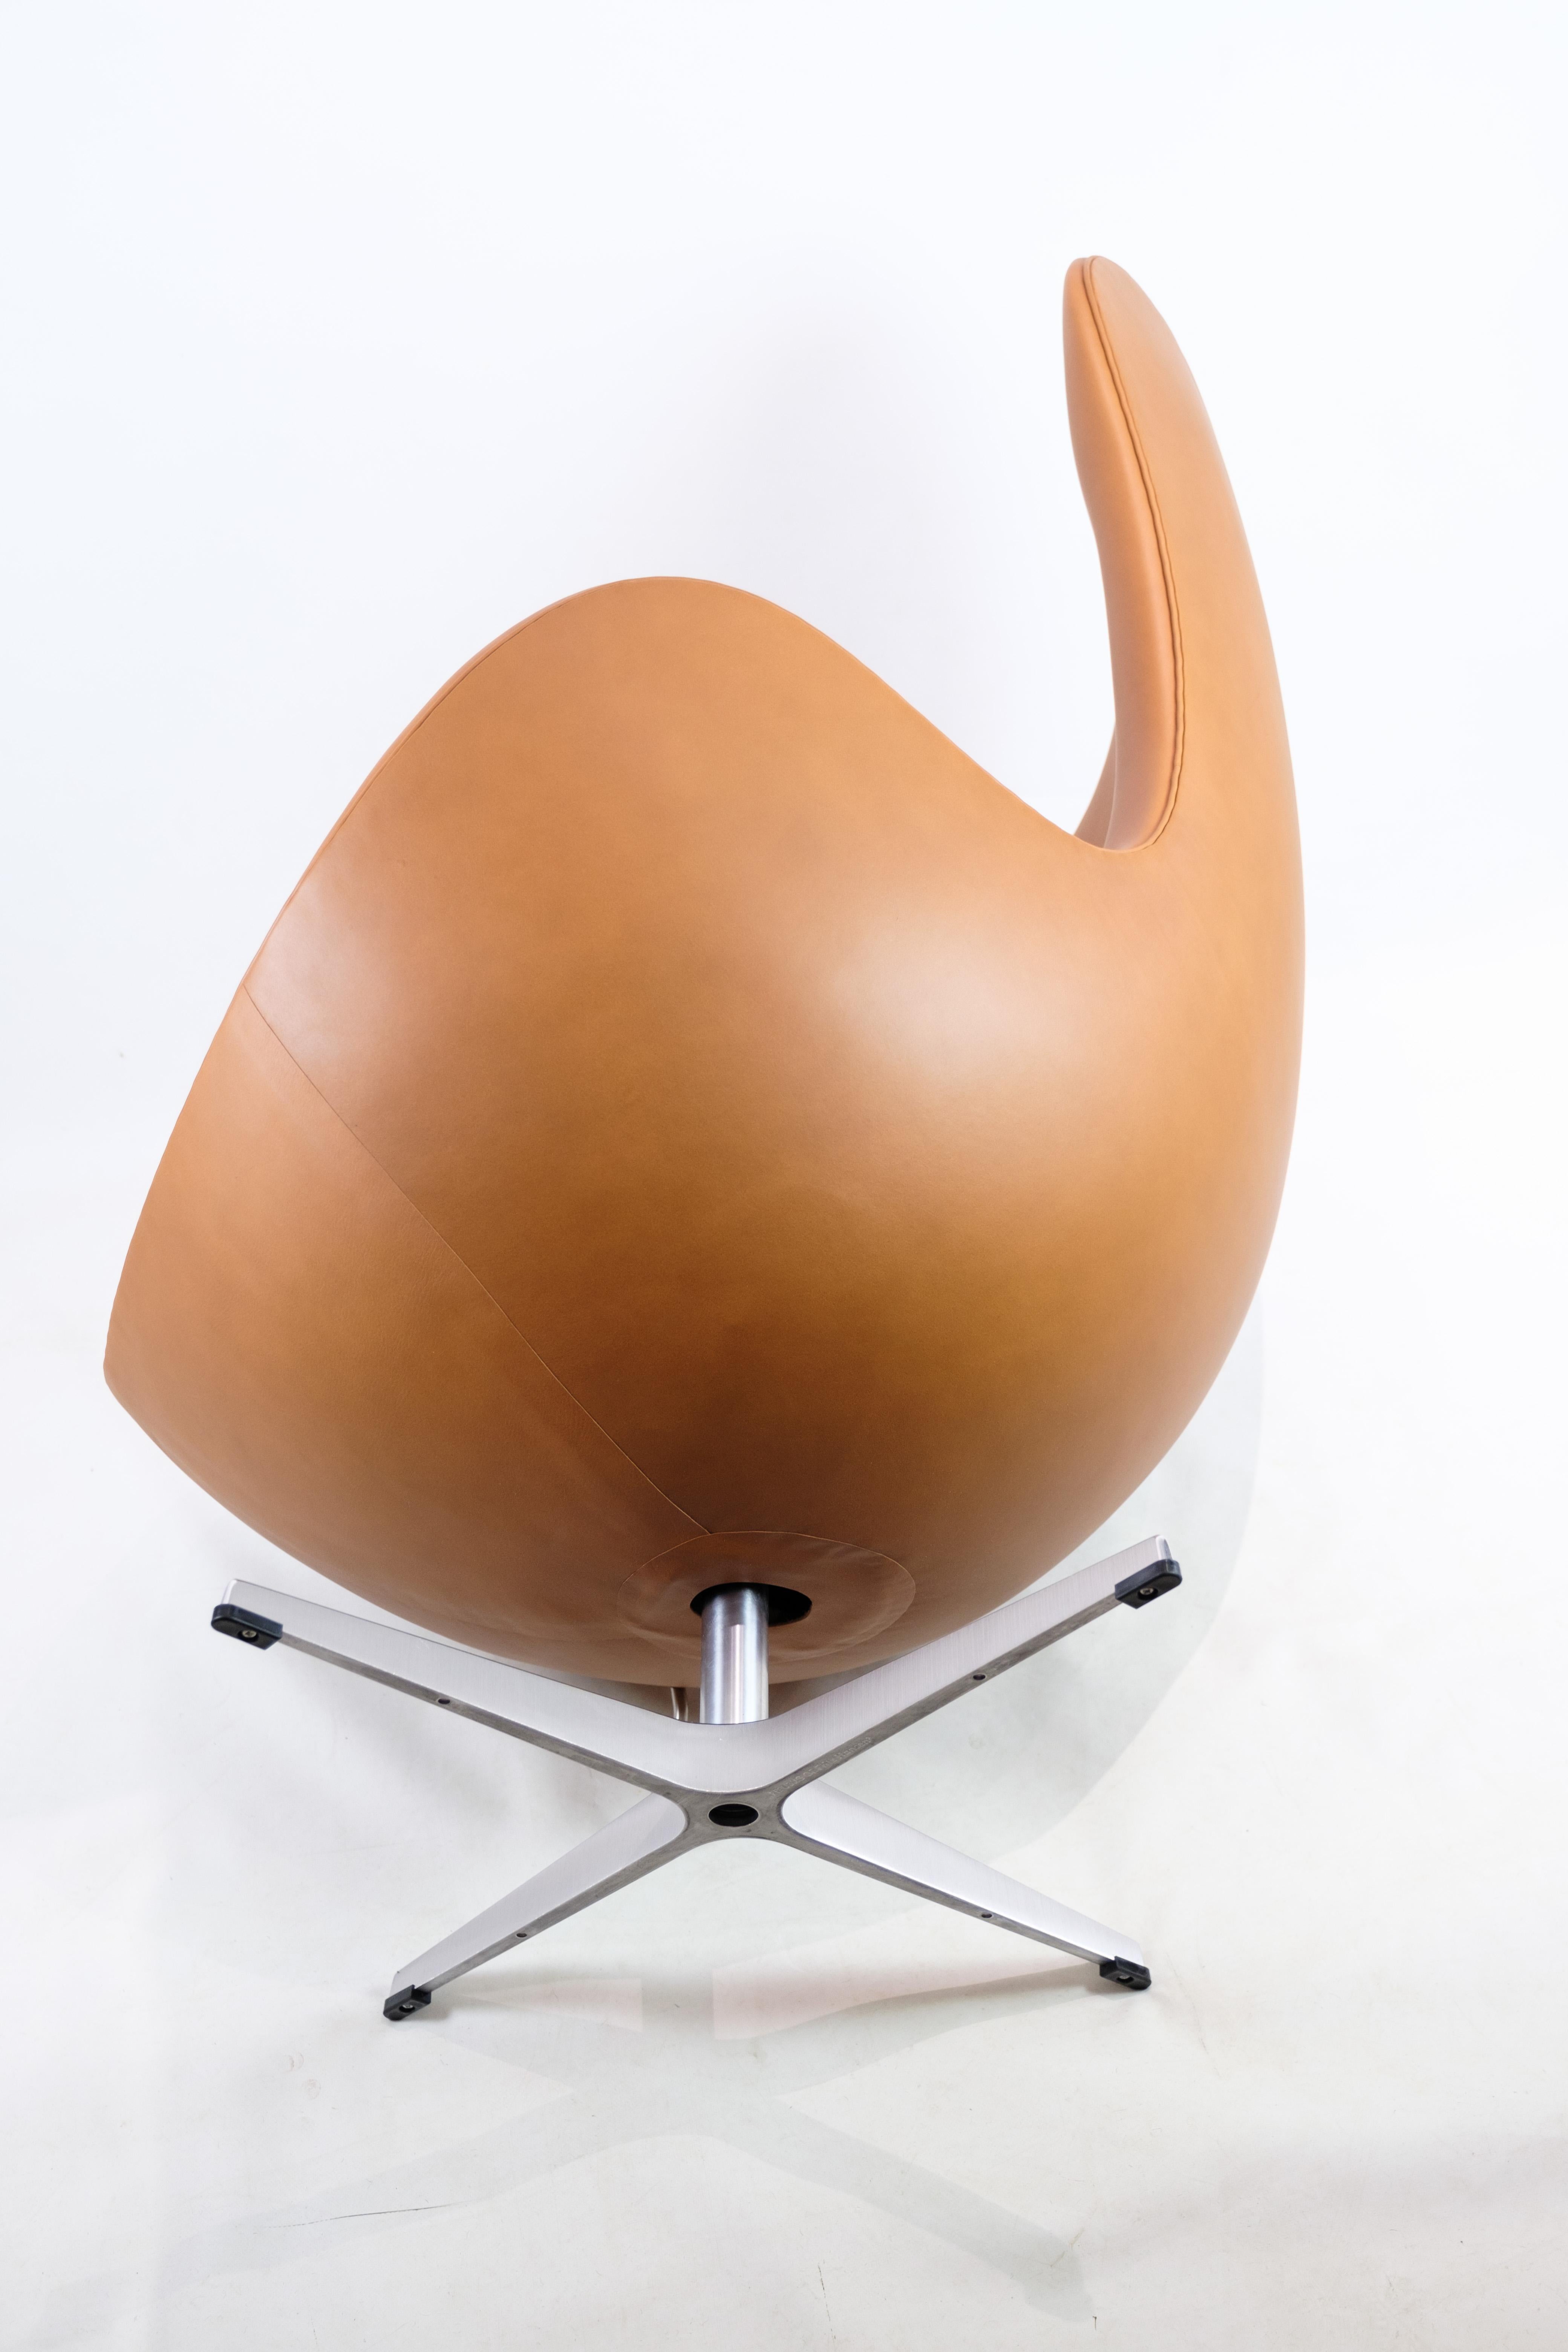 Egg, Model 3316, Arne Jacobsen, Fritz Hansen For Sale 6